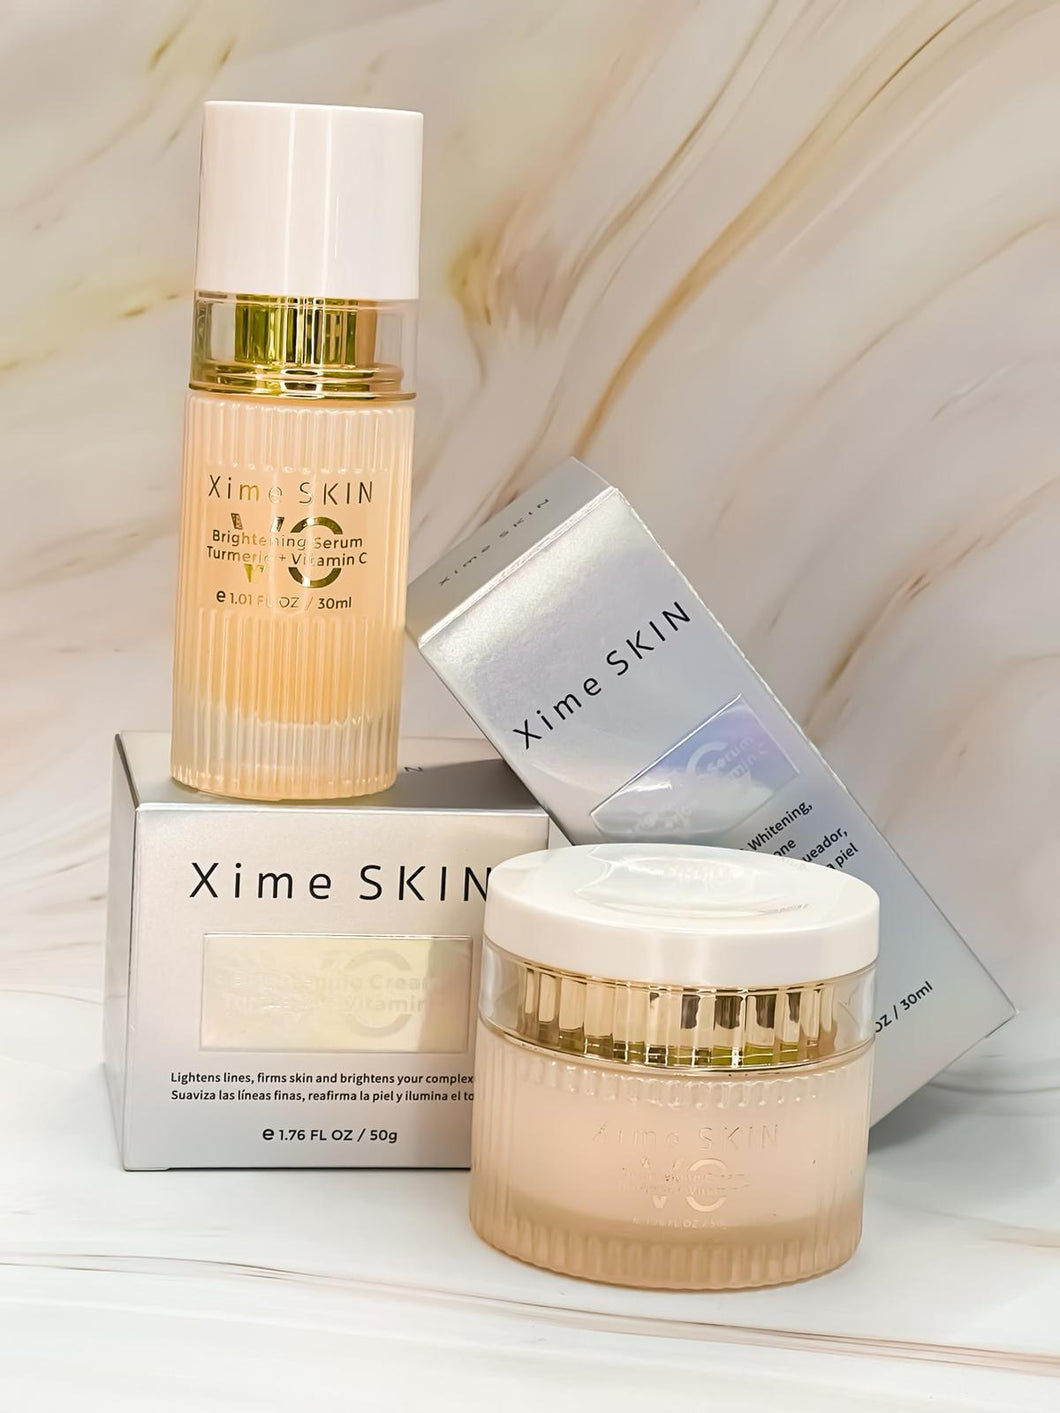 XS-062 Xime Skin Turmeric & Vitamin C Brightening Day Cream